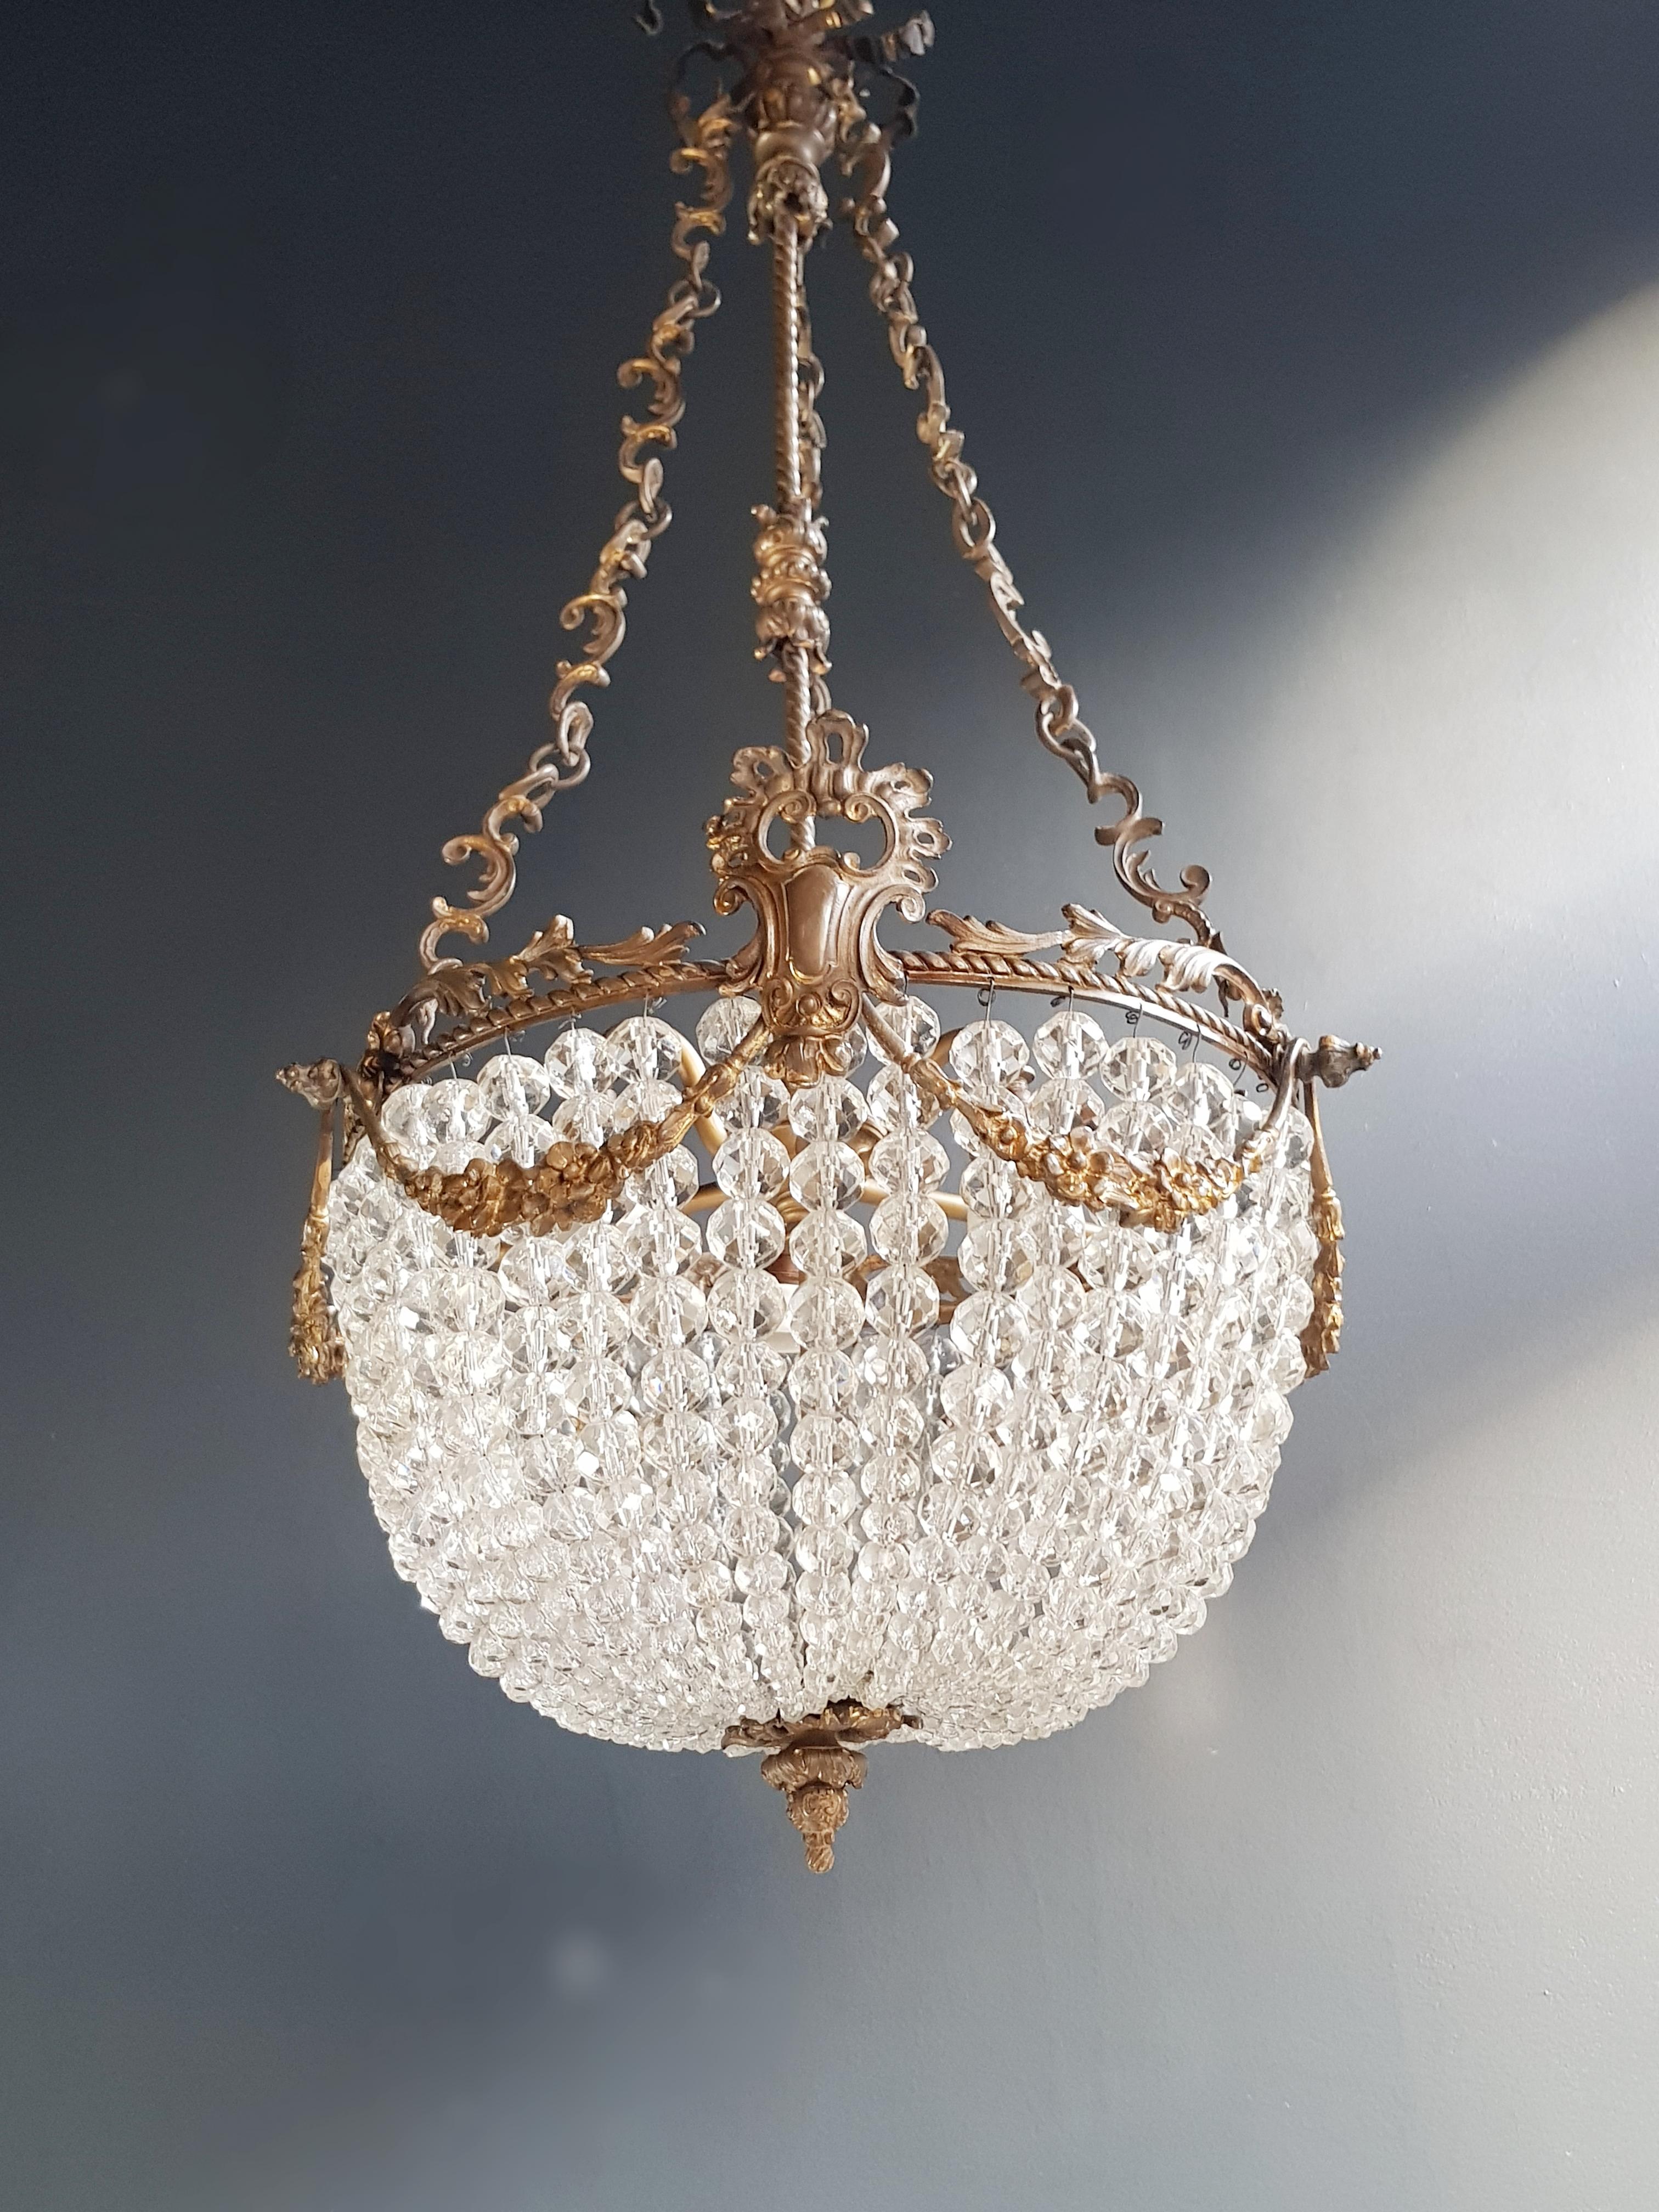 Beaded Crystal Basket Chandelier Antique Ceiling Lamp Lustre Art Nouveau 1